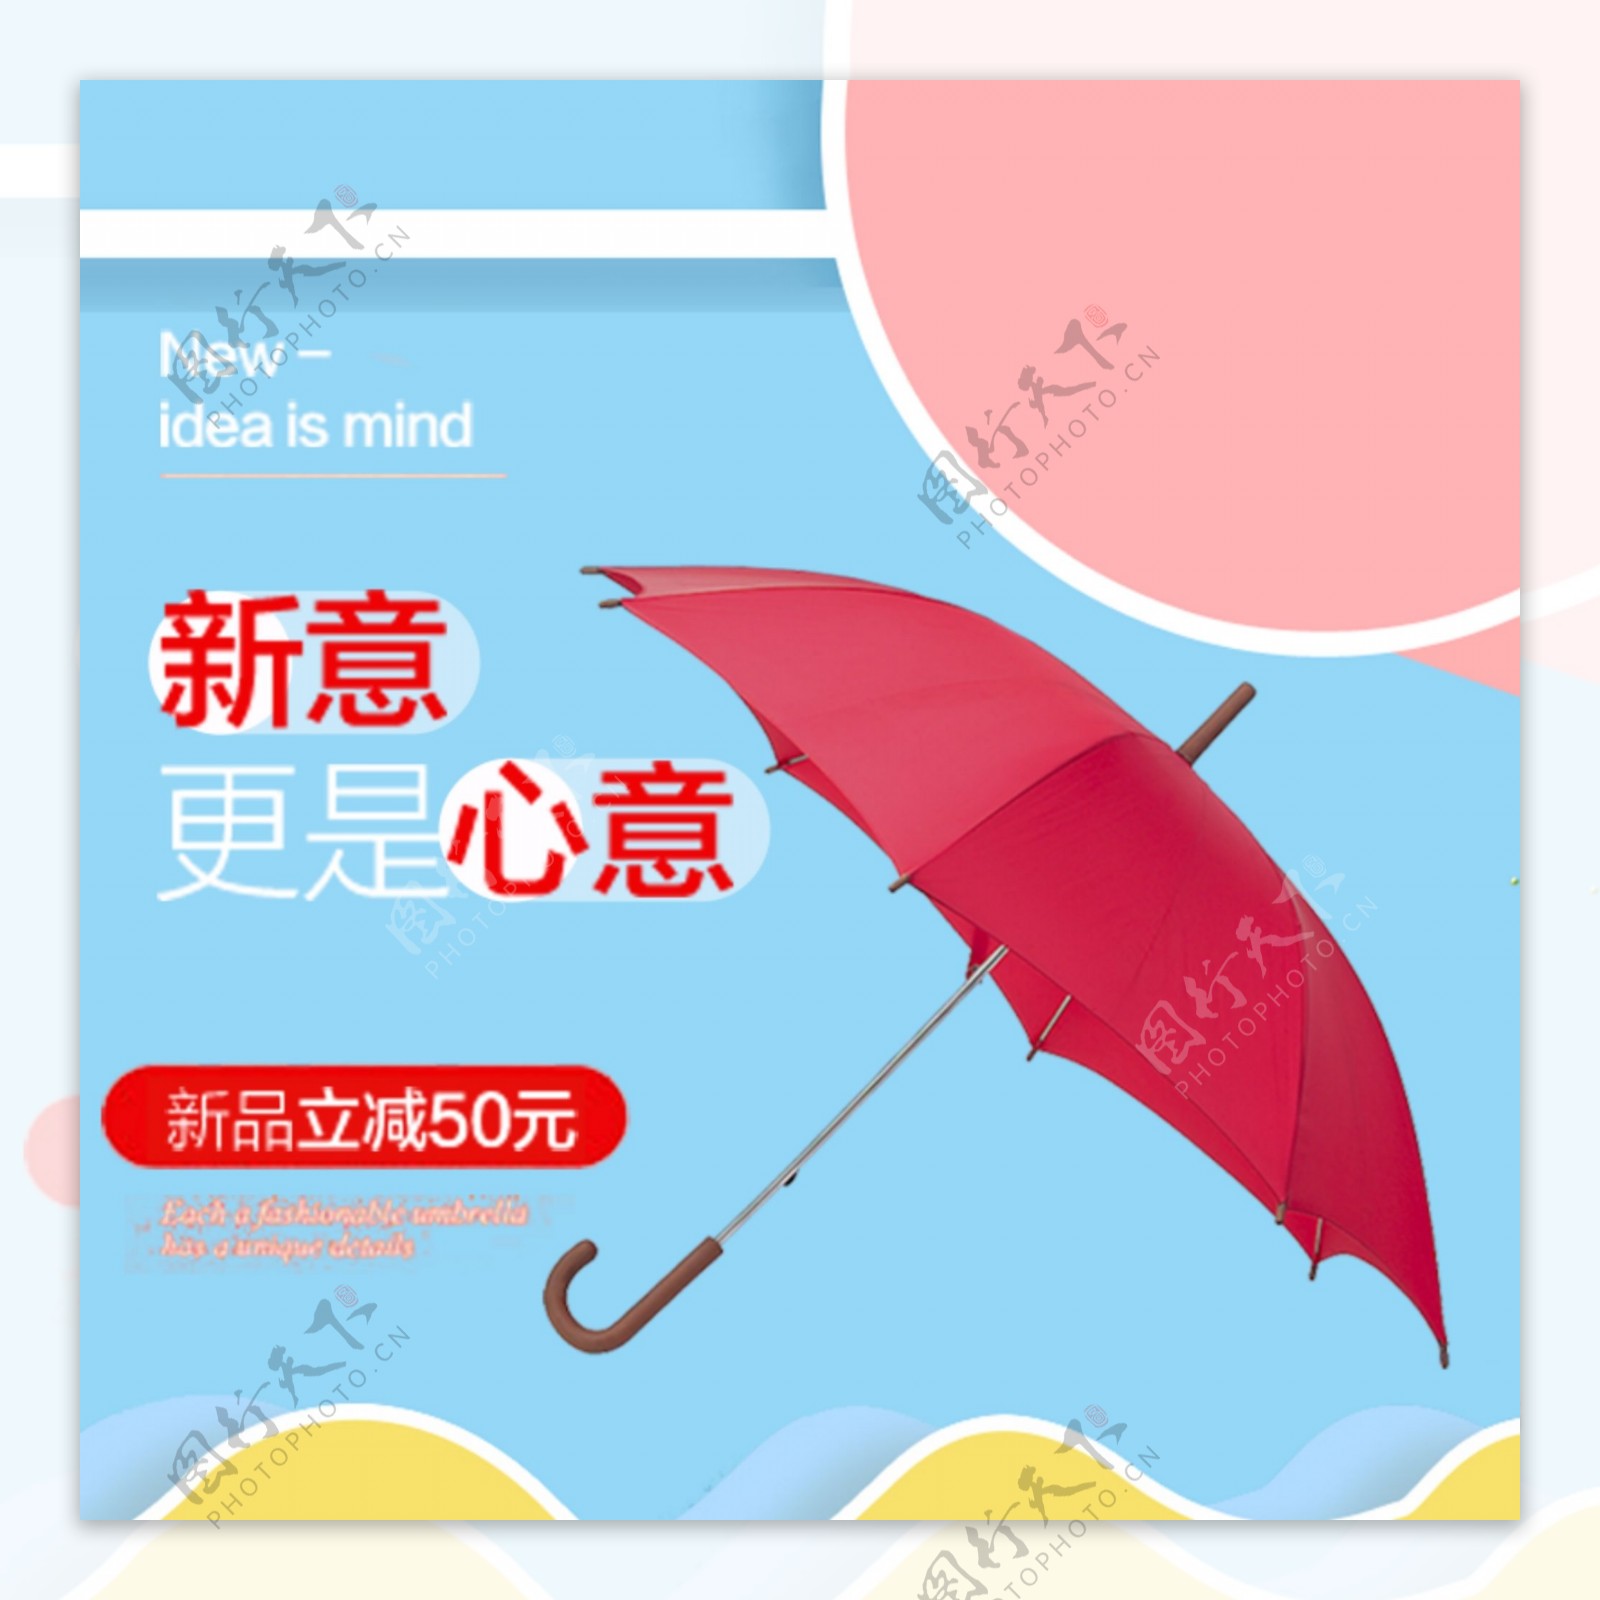 电商淘宝日用家具红色雨伞促销主图模板